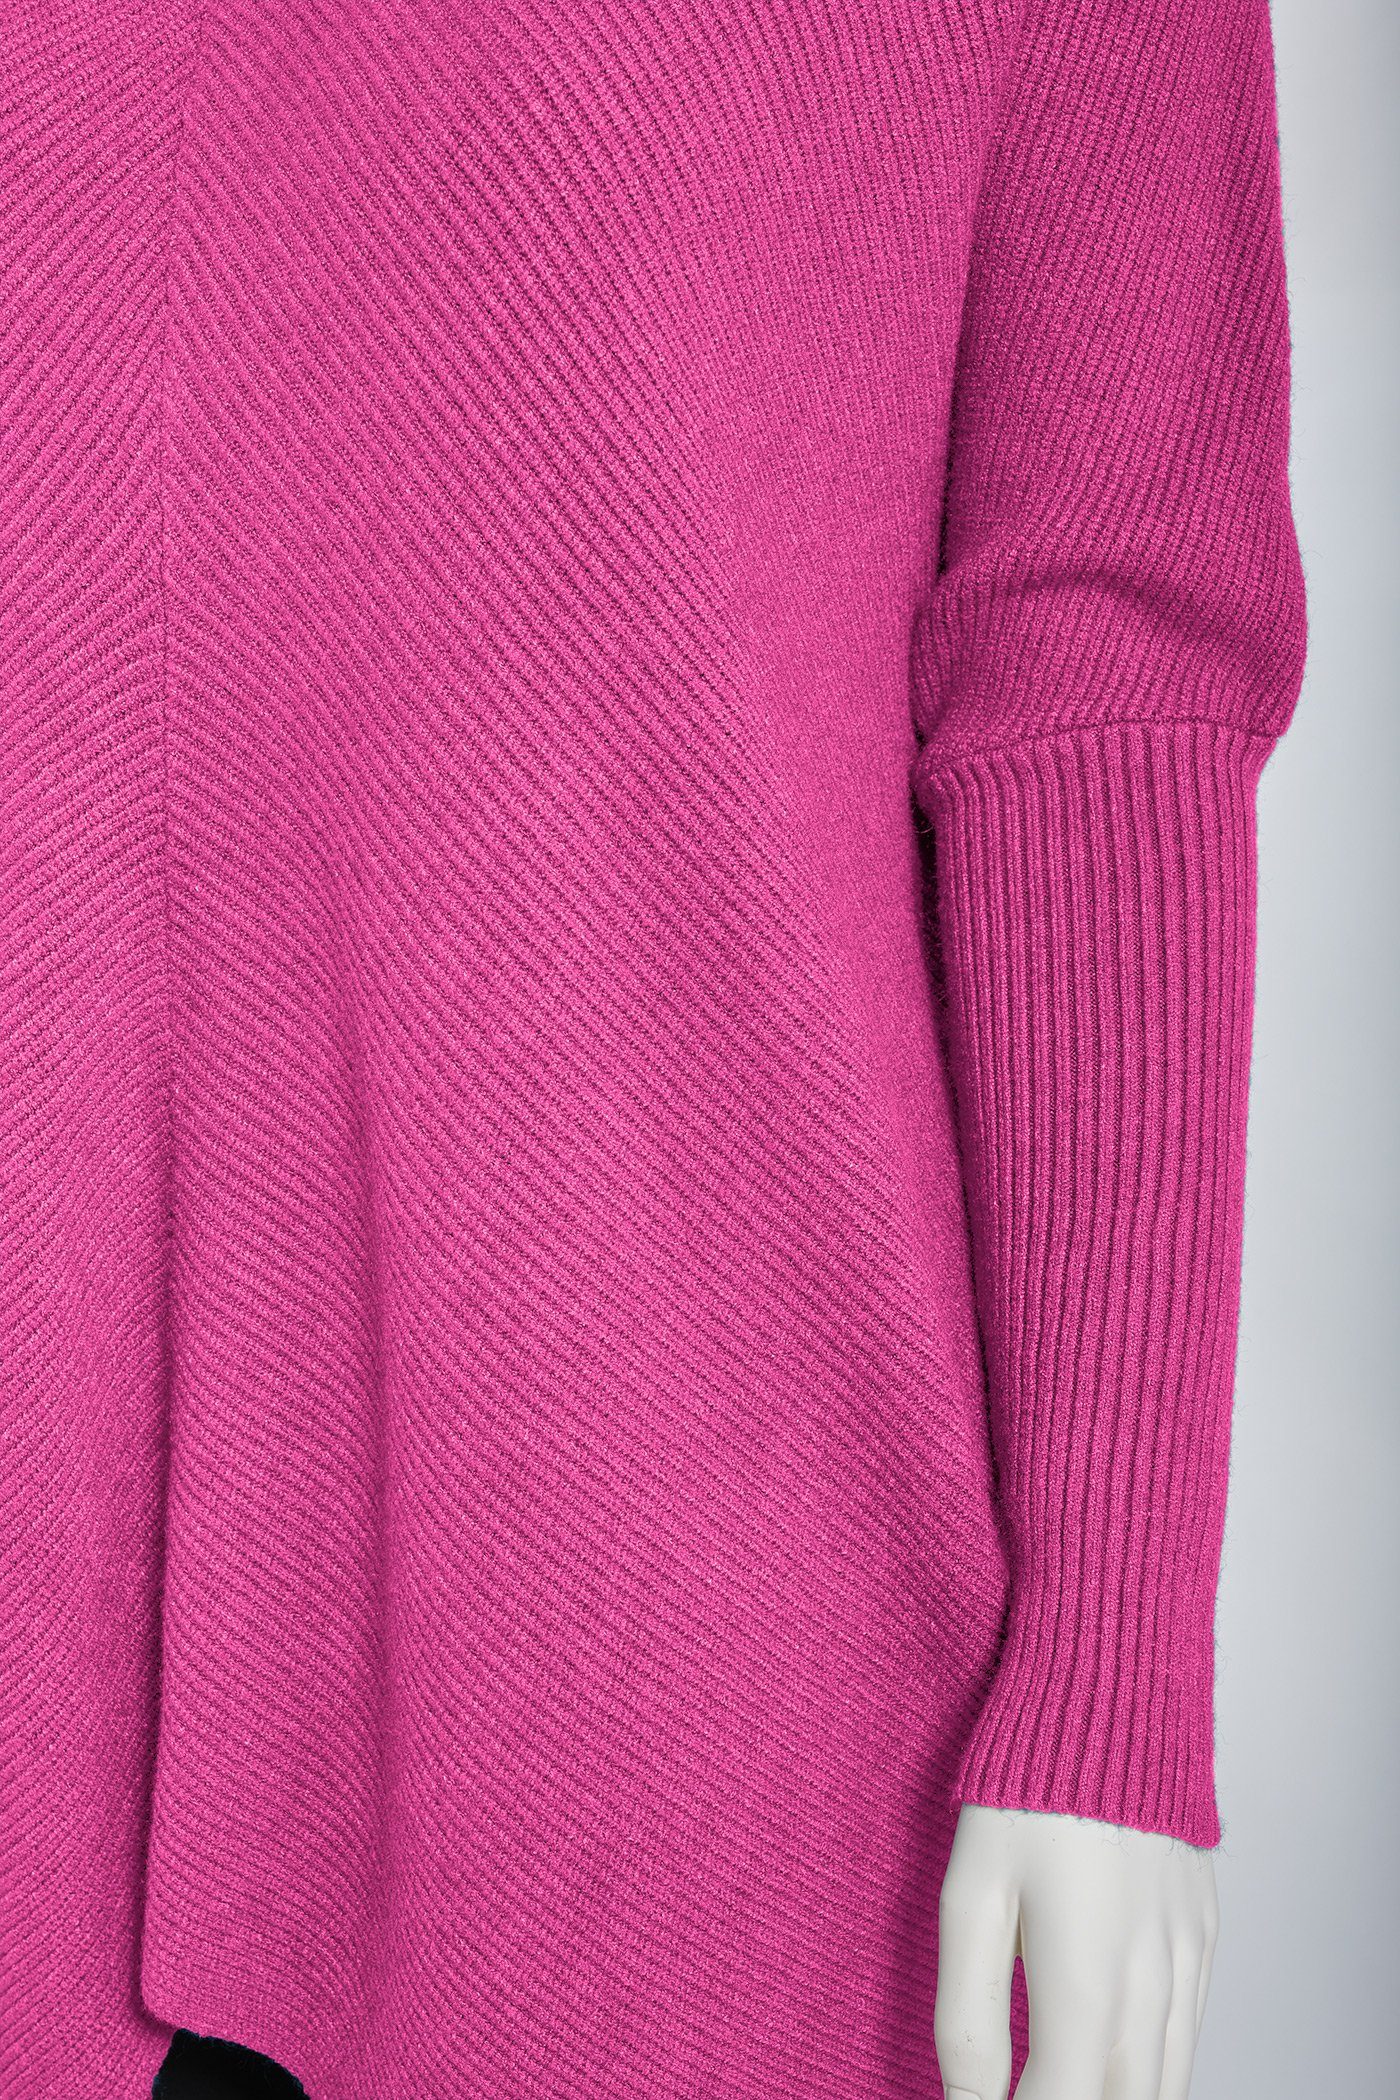 PEKIVESSA Longpullover Oversized pink Damen hinten länger langer (1-tlg) Rollkragenpullover Fledermausärmel